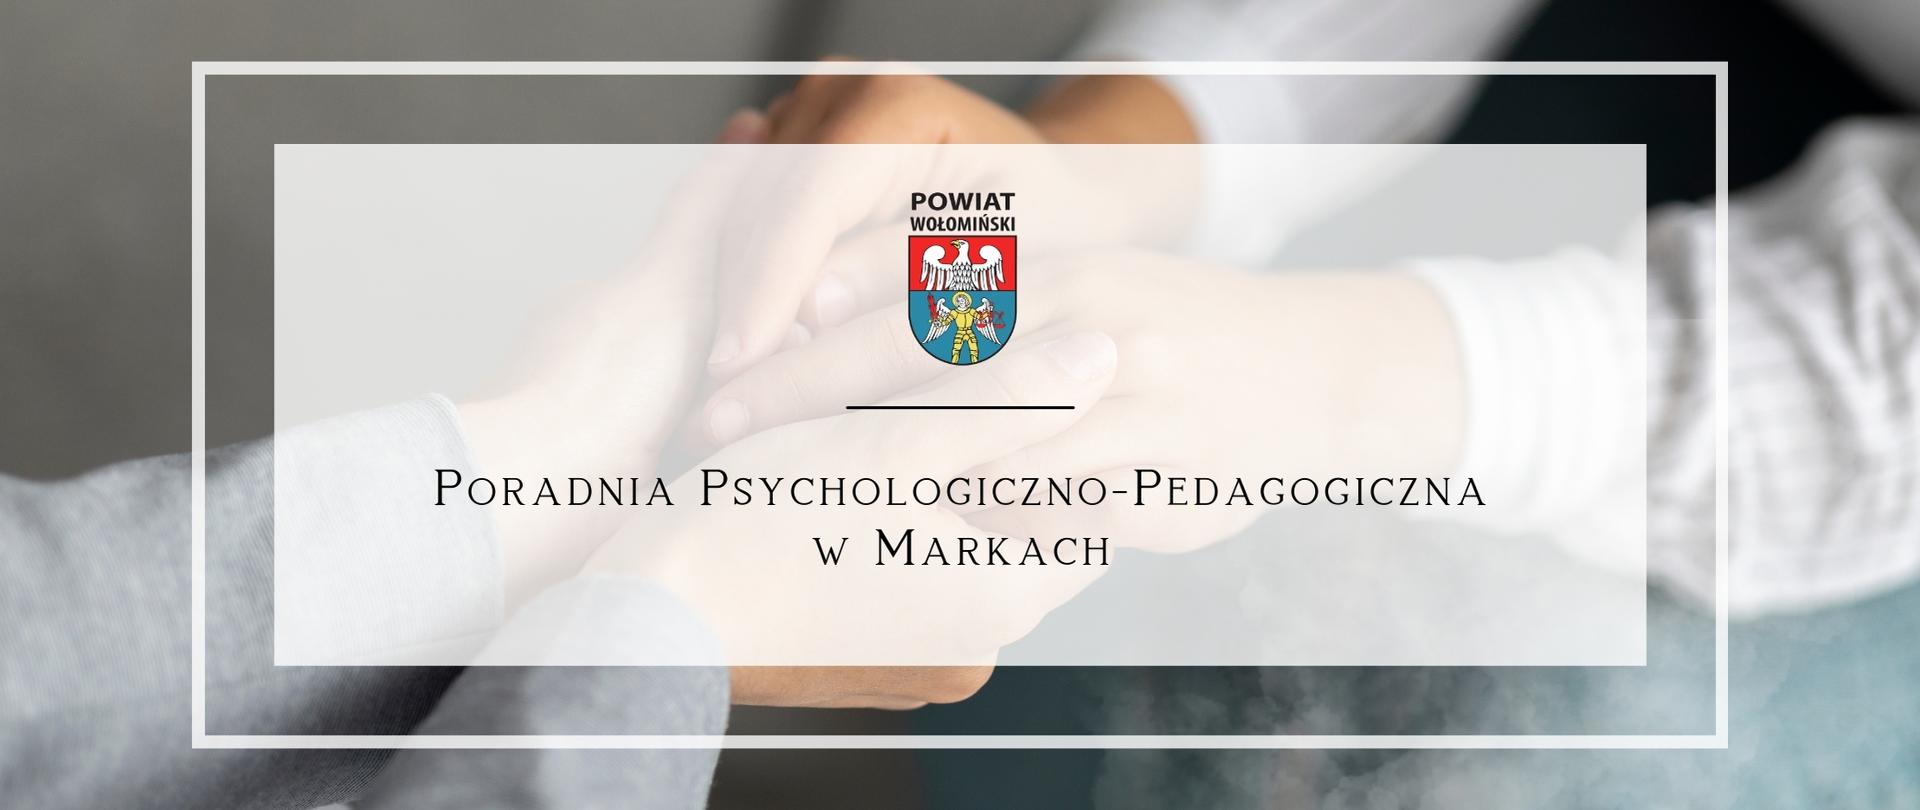 Poradnia Psychologiczno-Pedagogiczna w Markach